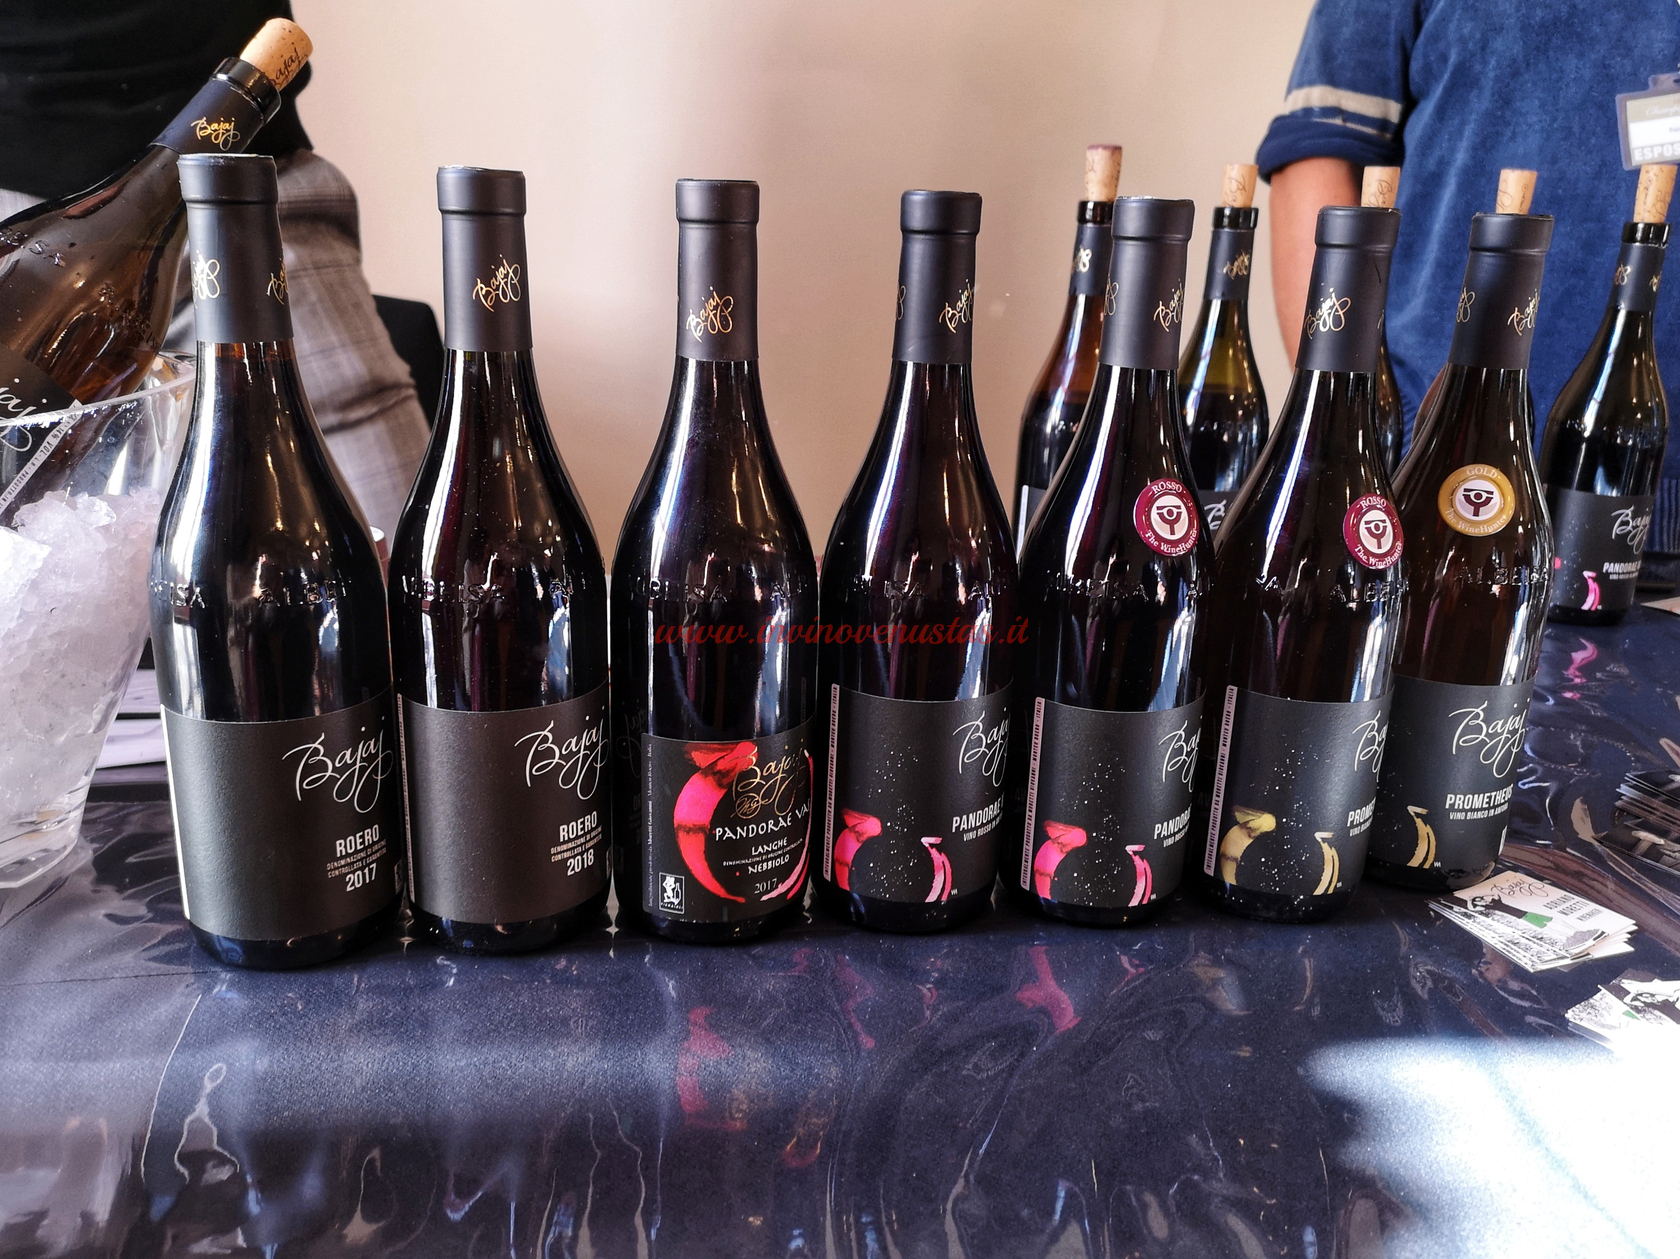 Bajaj vini in degustazione Merano Wine Festival 2021